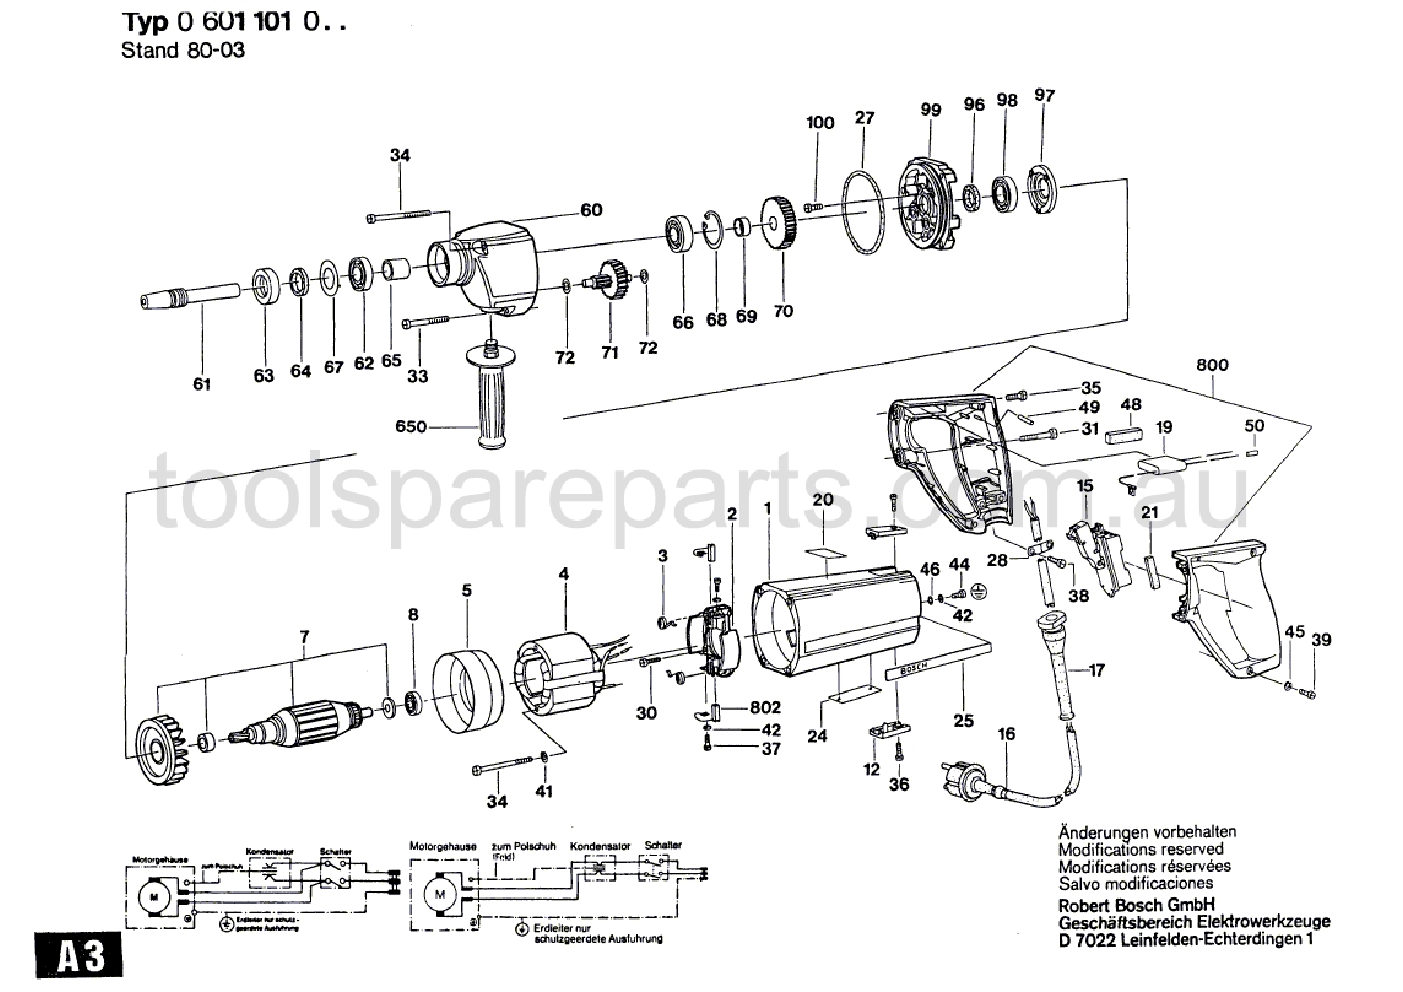 Bosch UB(J)75B 26 0601101021  Diagram 1